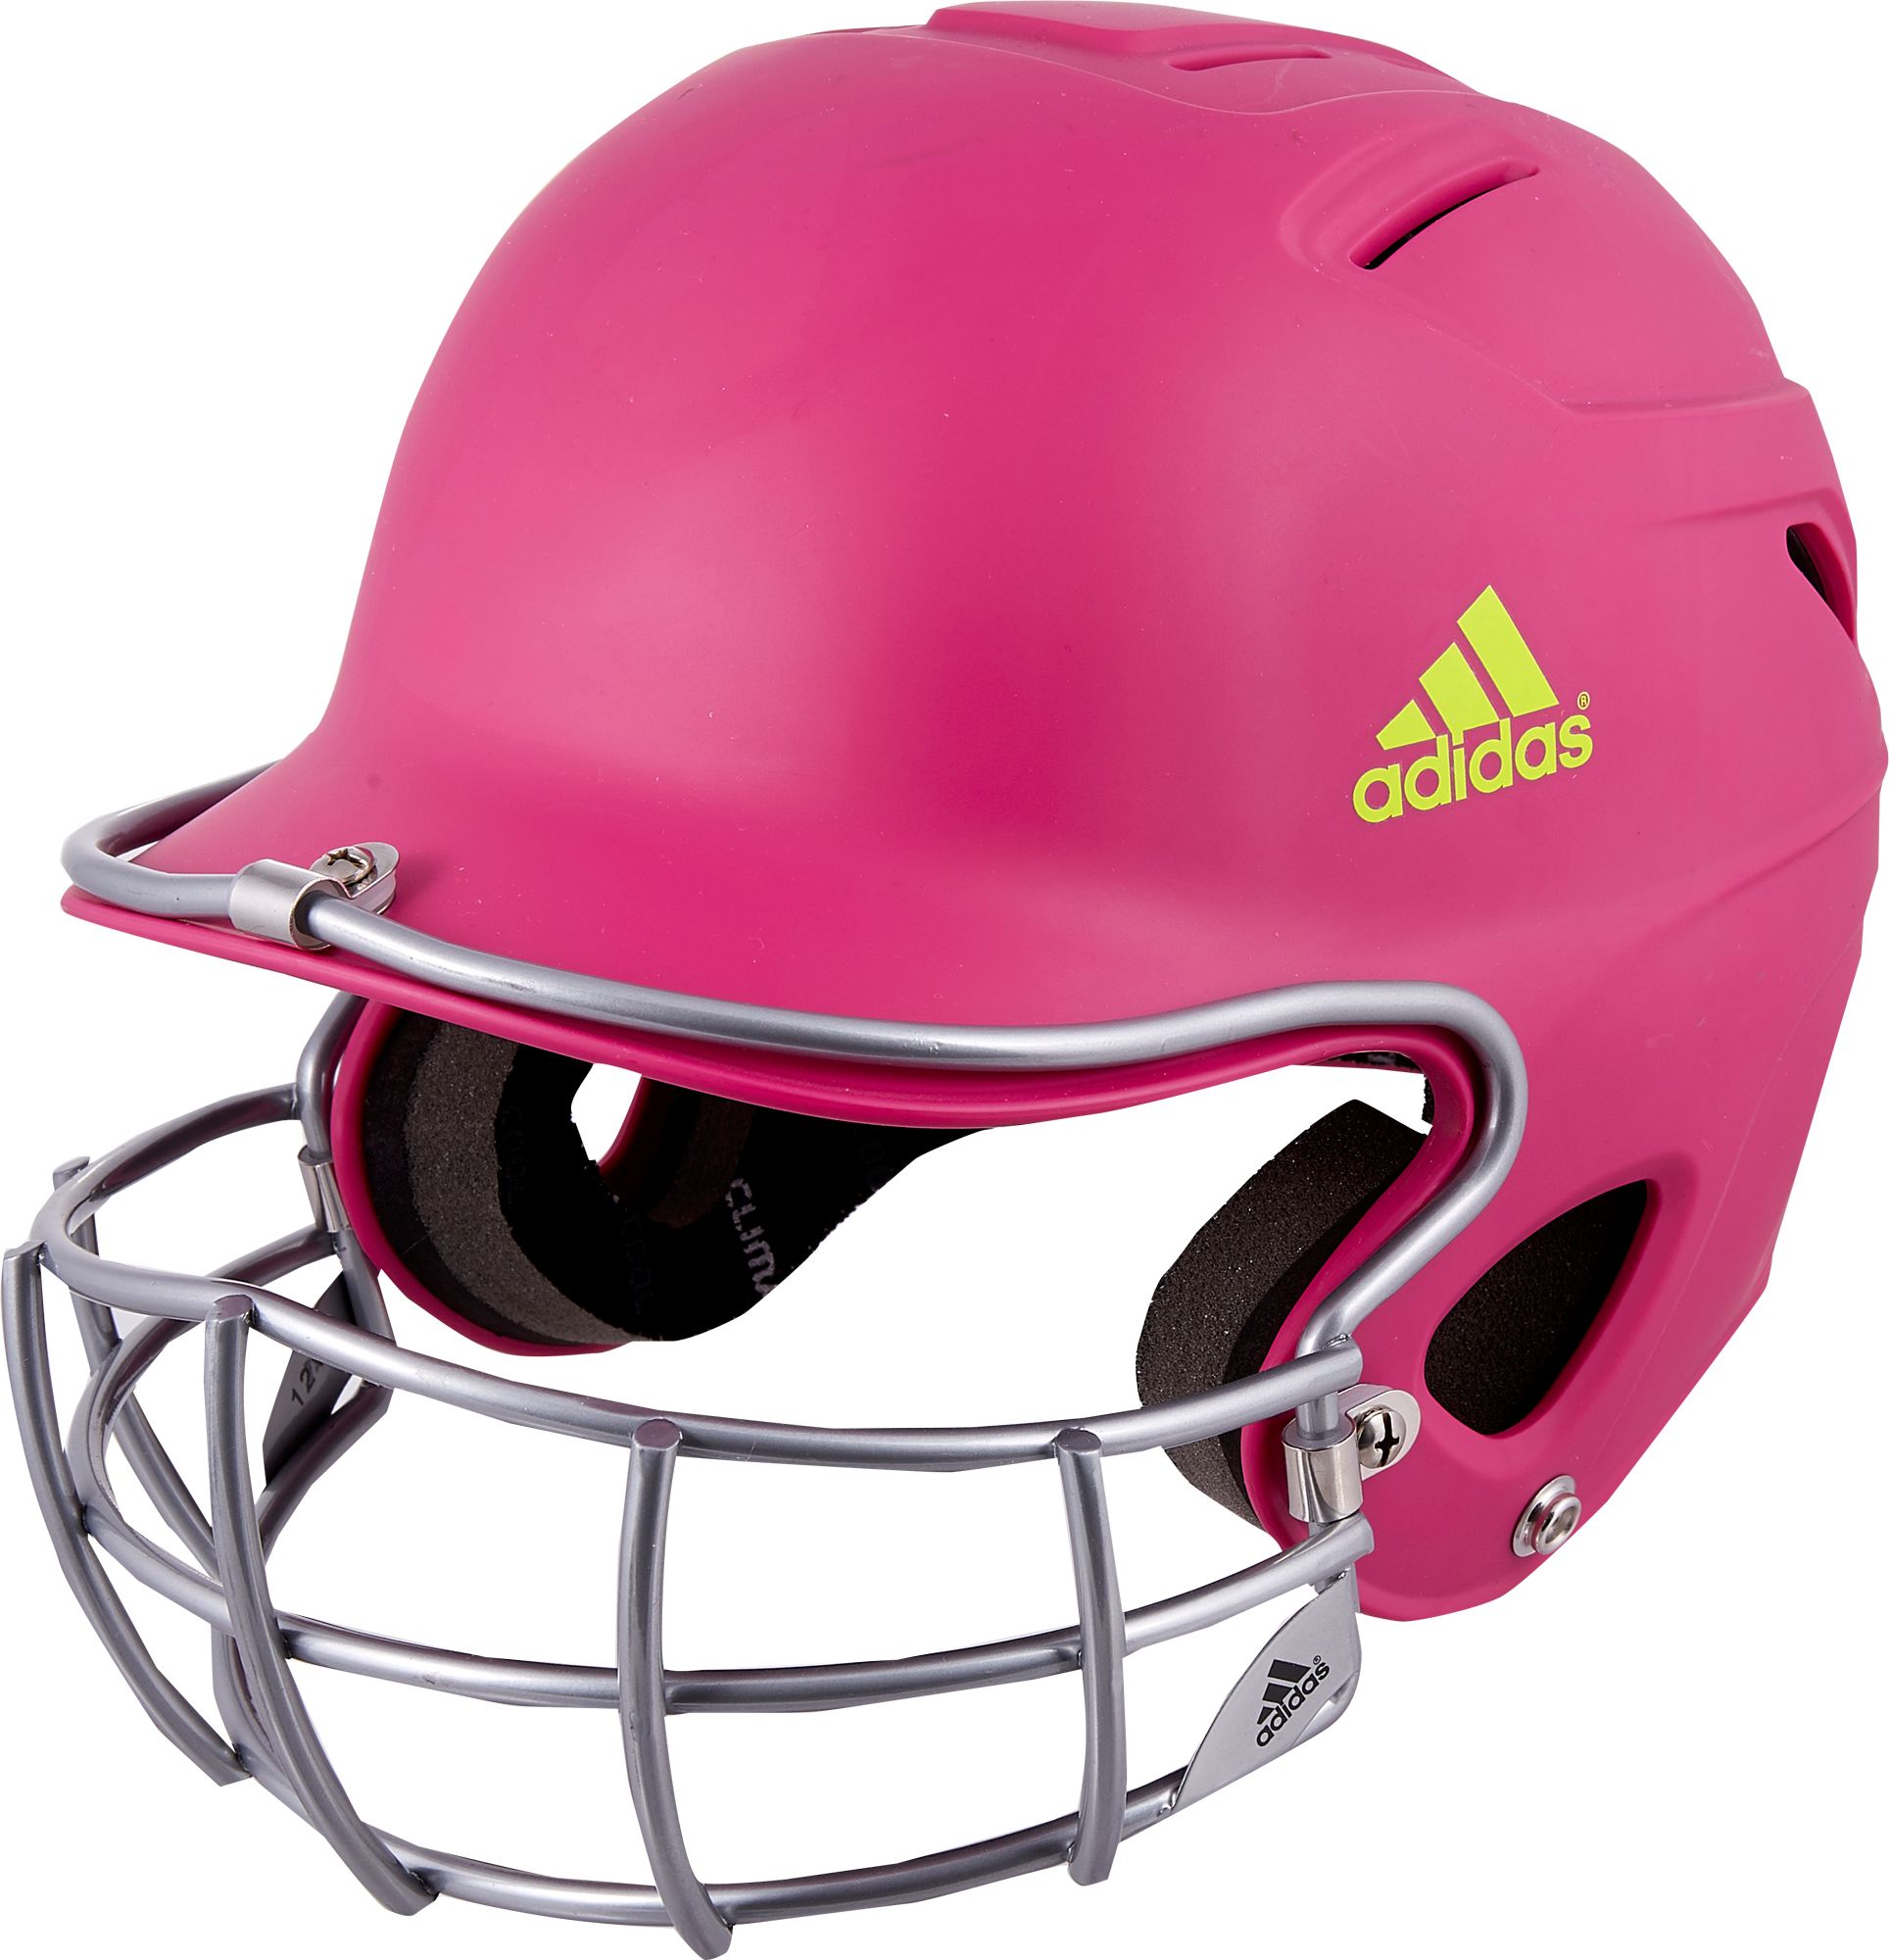 adidas trilogy fastpitch batting helmet